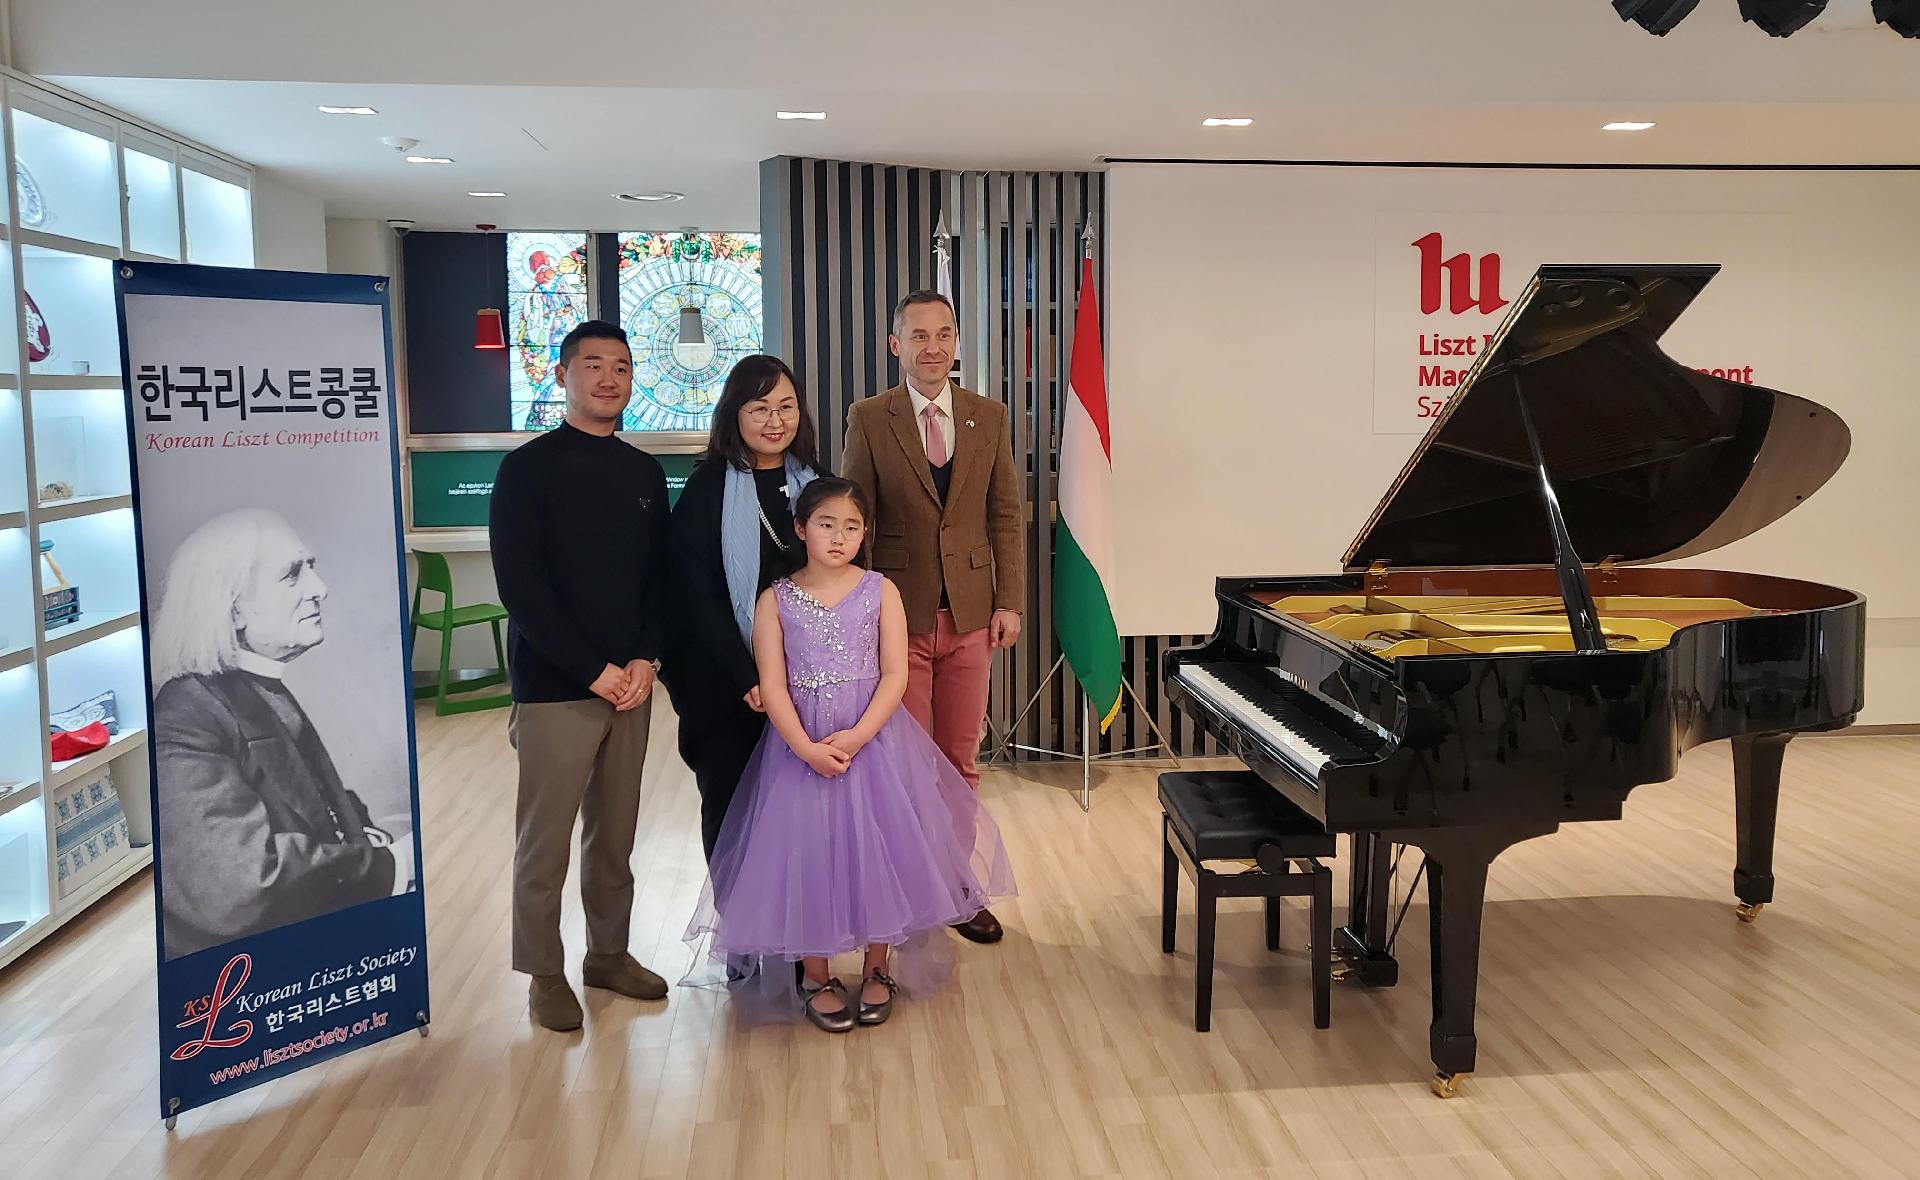 XIV. Koreai Liszt-zongoraverseny gálakoncertje